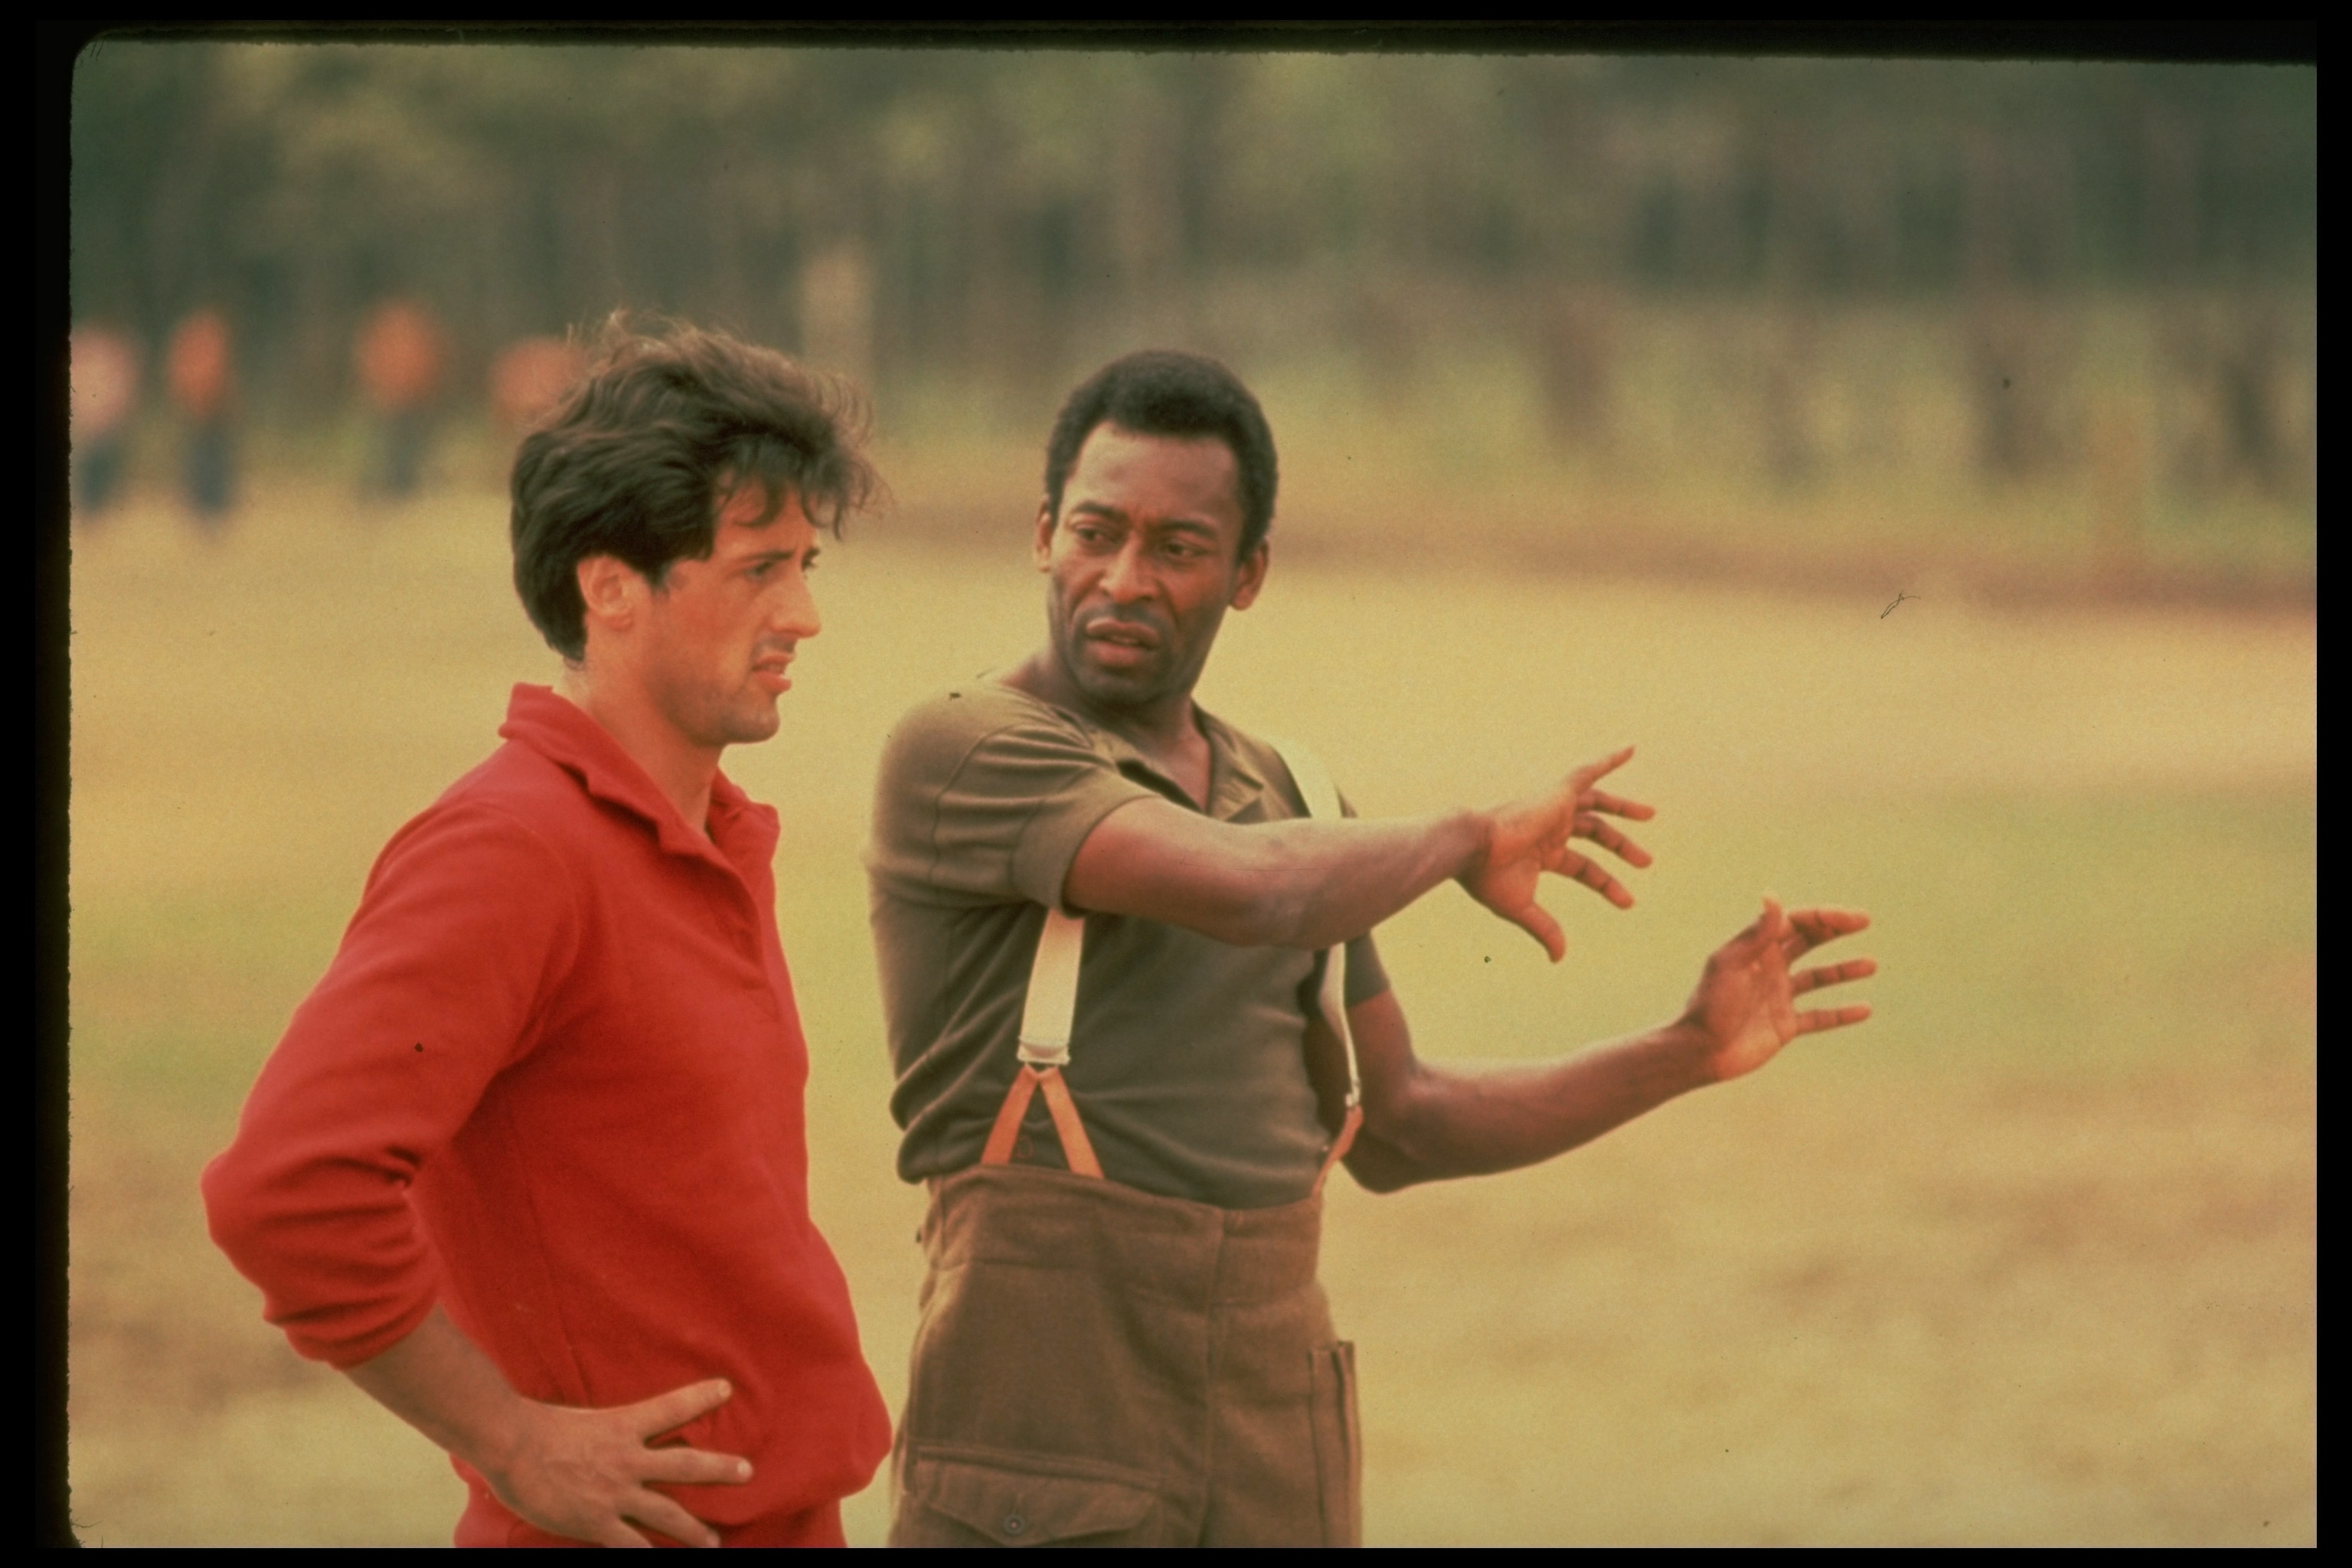 Una fase delle riprese del film "Fuga per la vittoria" nel 1981, tra i quali protagonisti ci sono pelè e un giovane Silvester Stallone